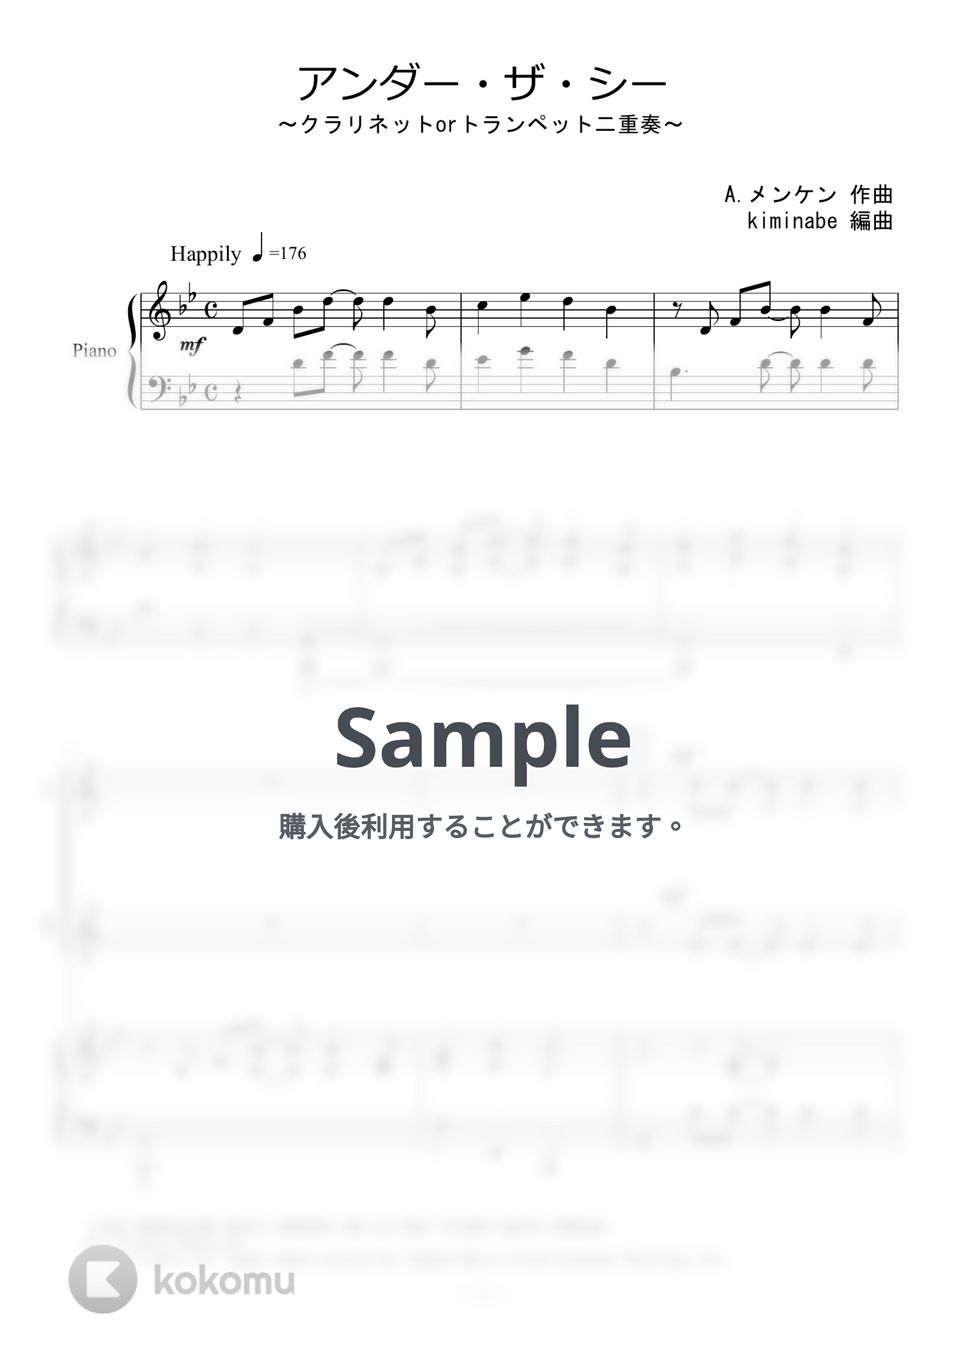 リトルマーメイド - アンダー・ザ・シー (クラリネットorトランペット二重奏) by kiminabe